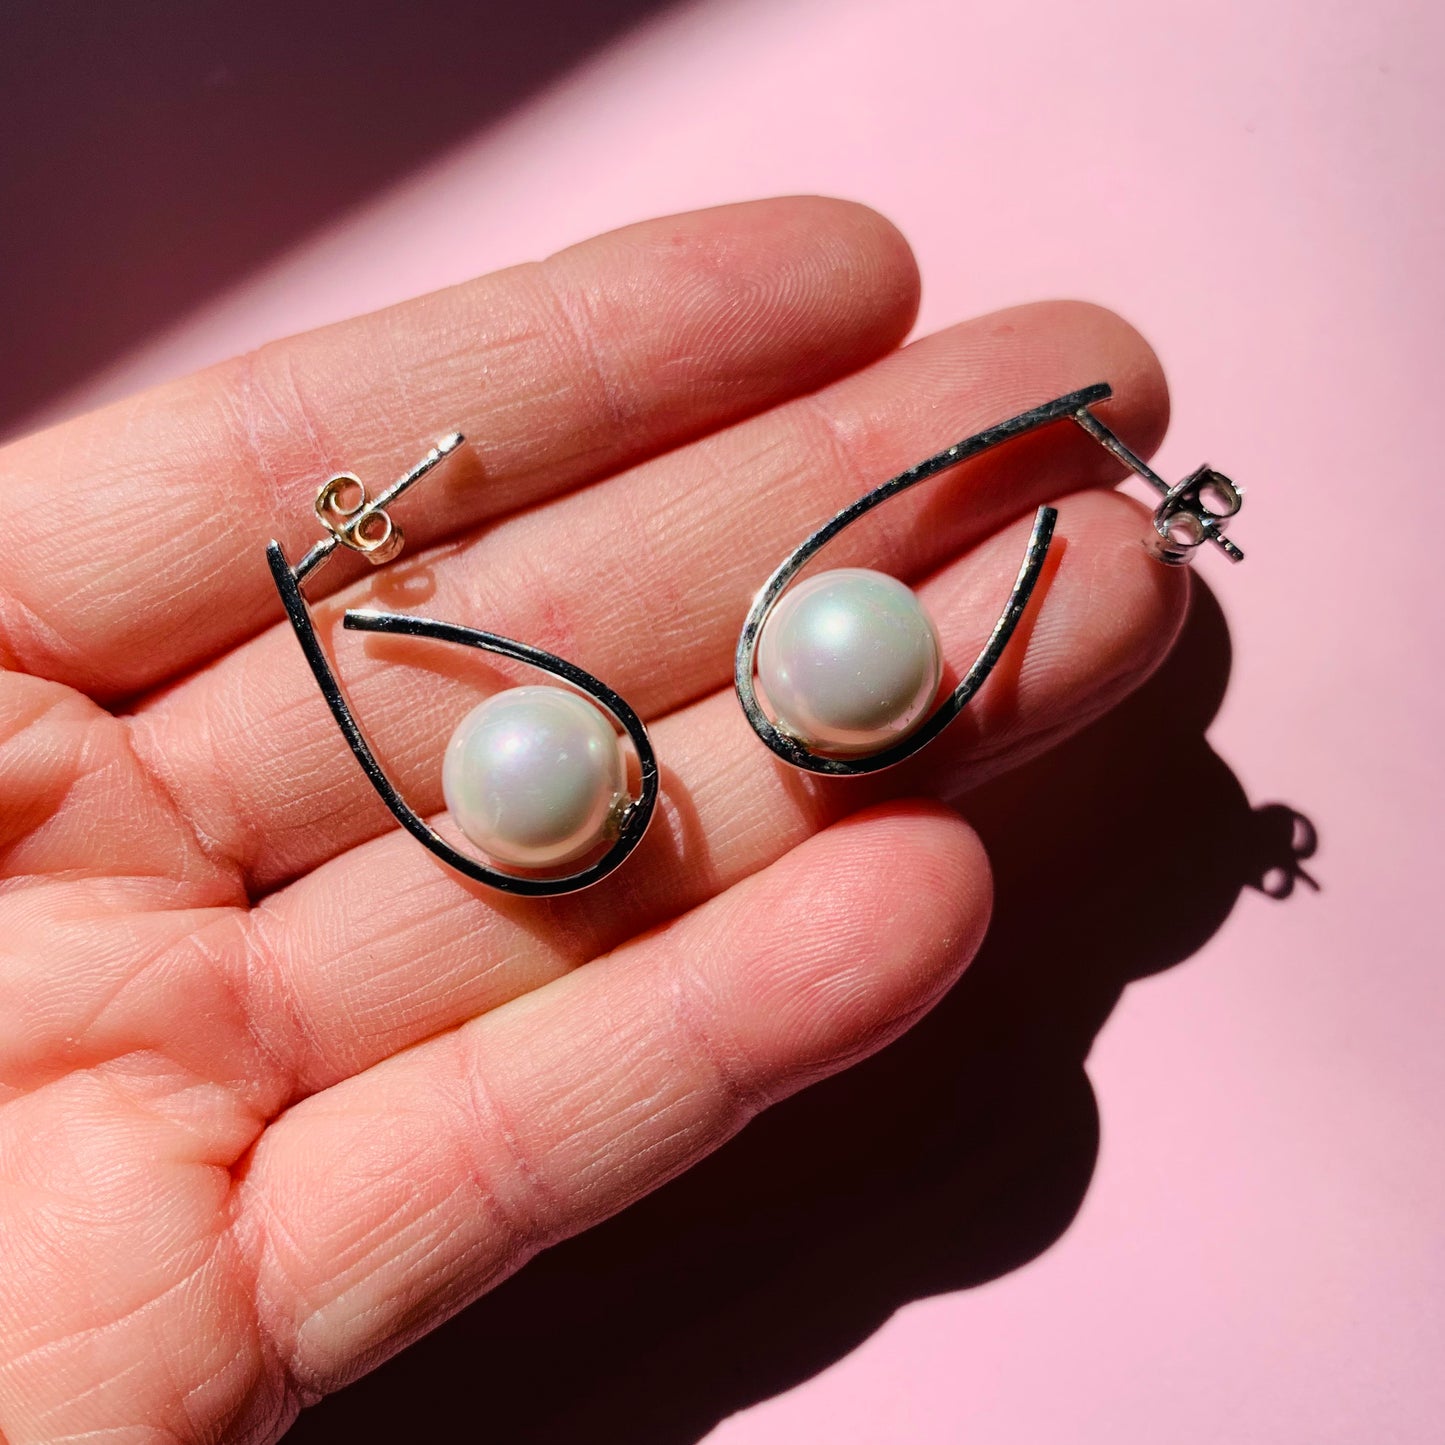 Vintage sterling silver drop stud earrings with sea pearls